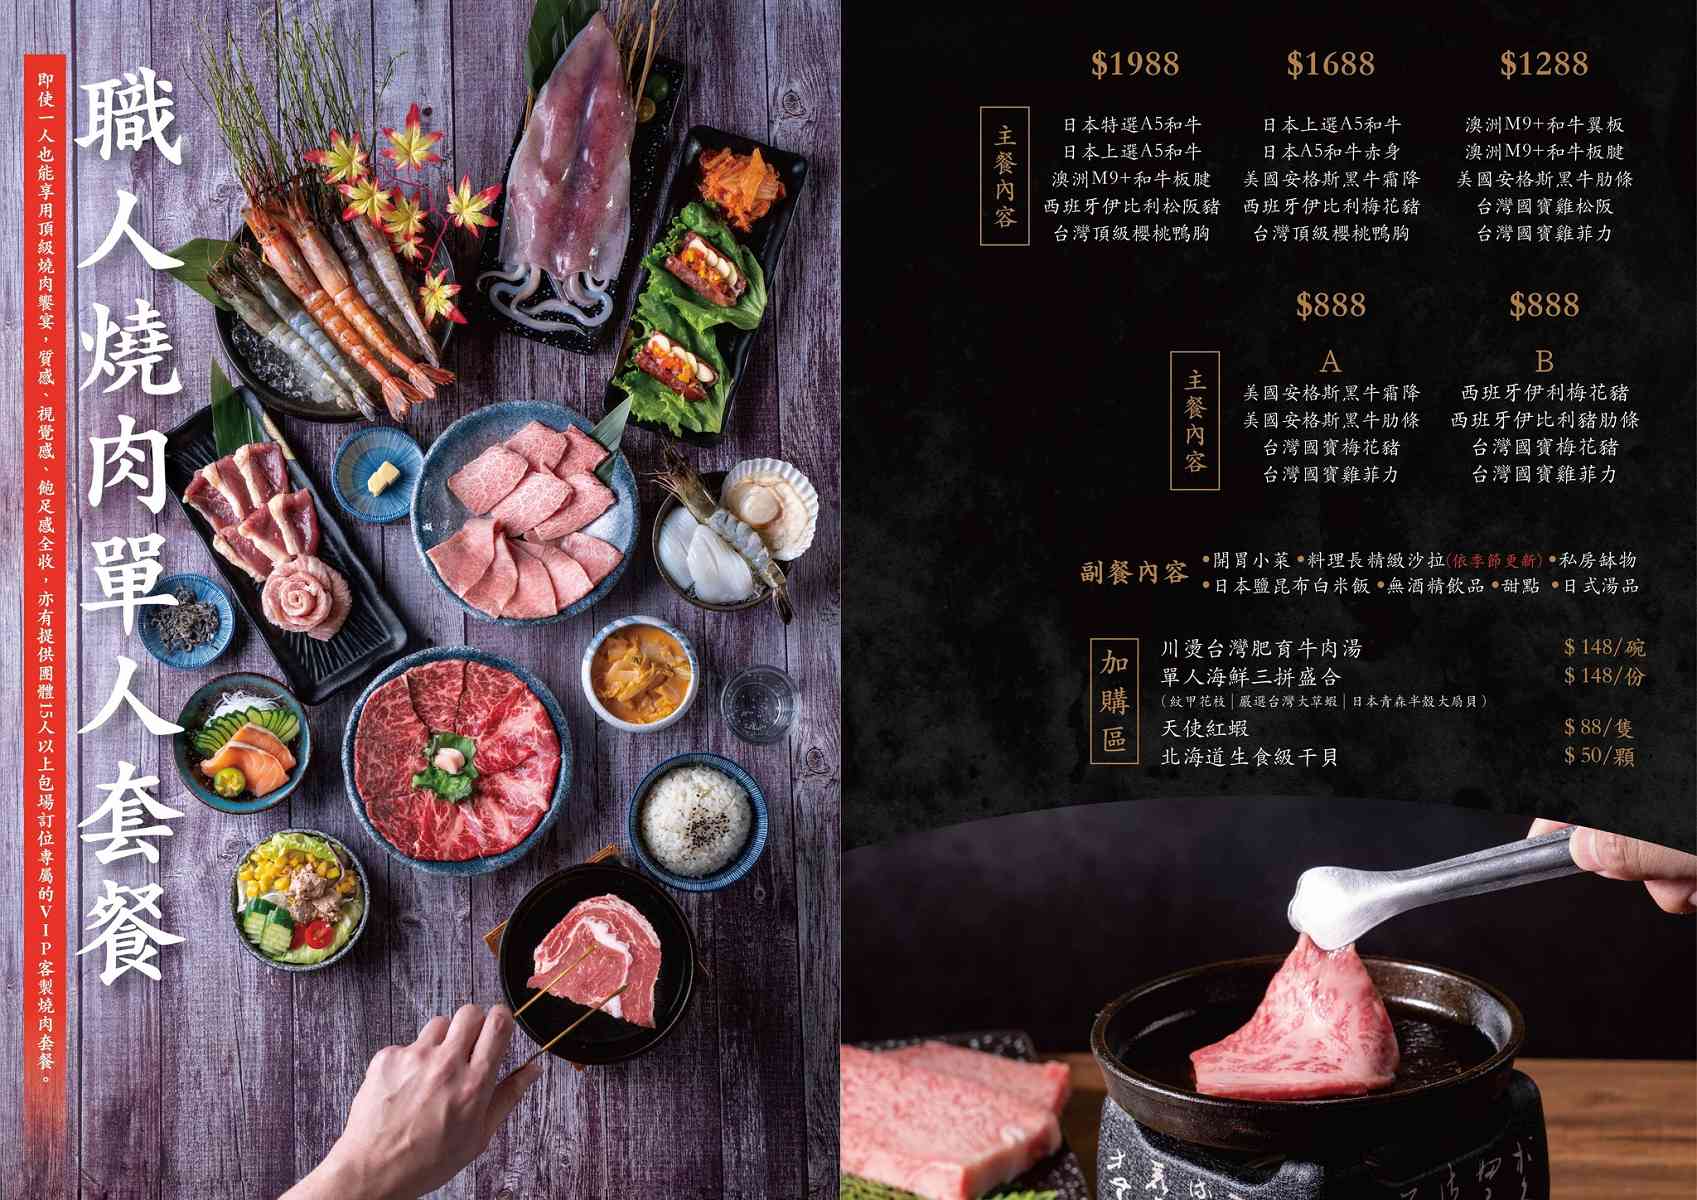 台南燒肉、火鍋︱島和 職人燒肉鍋物料理 台南旗艦店：用餐環境寬敞明亮，精品肉質代烤服務，實惠價格！588起的頂級肉是自然的調味大師，吃過忘不了